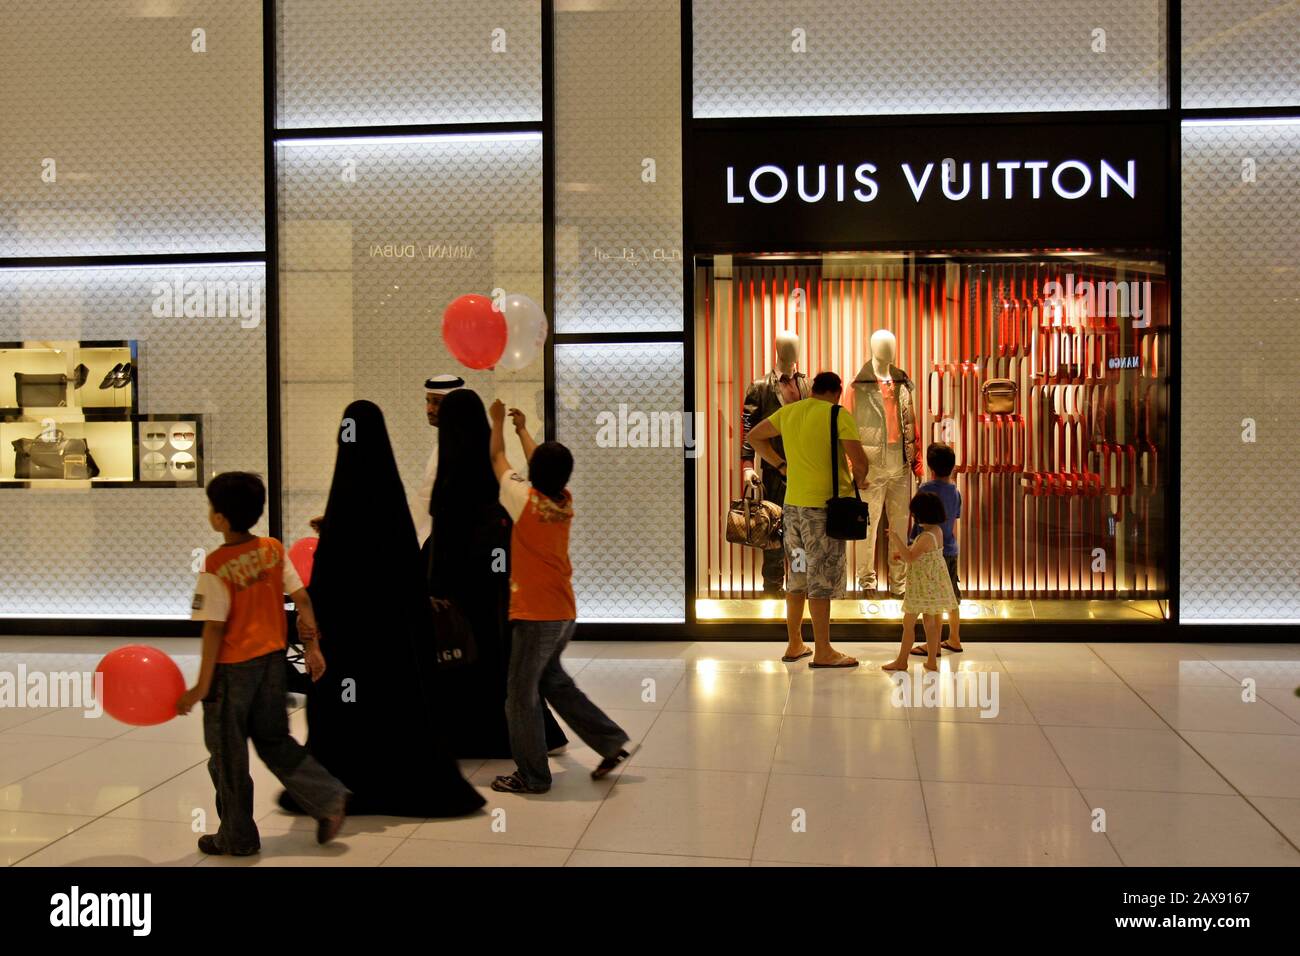 LV in Dubai Mall #wasalicious #lv #shopping #dubai #dubaimall #louisvu